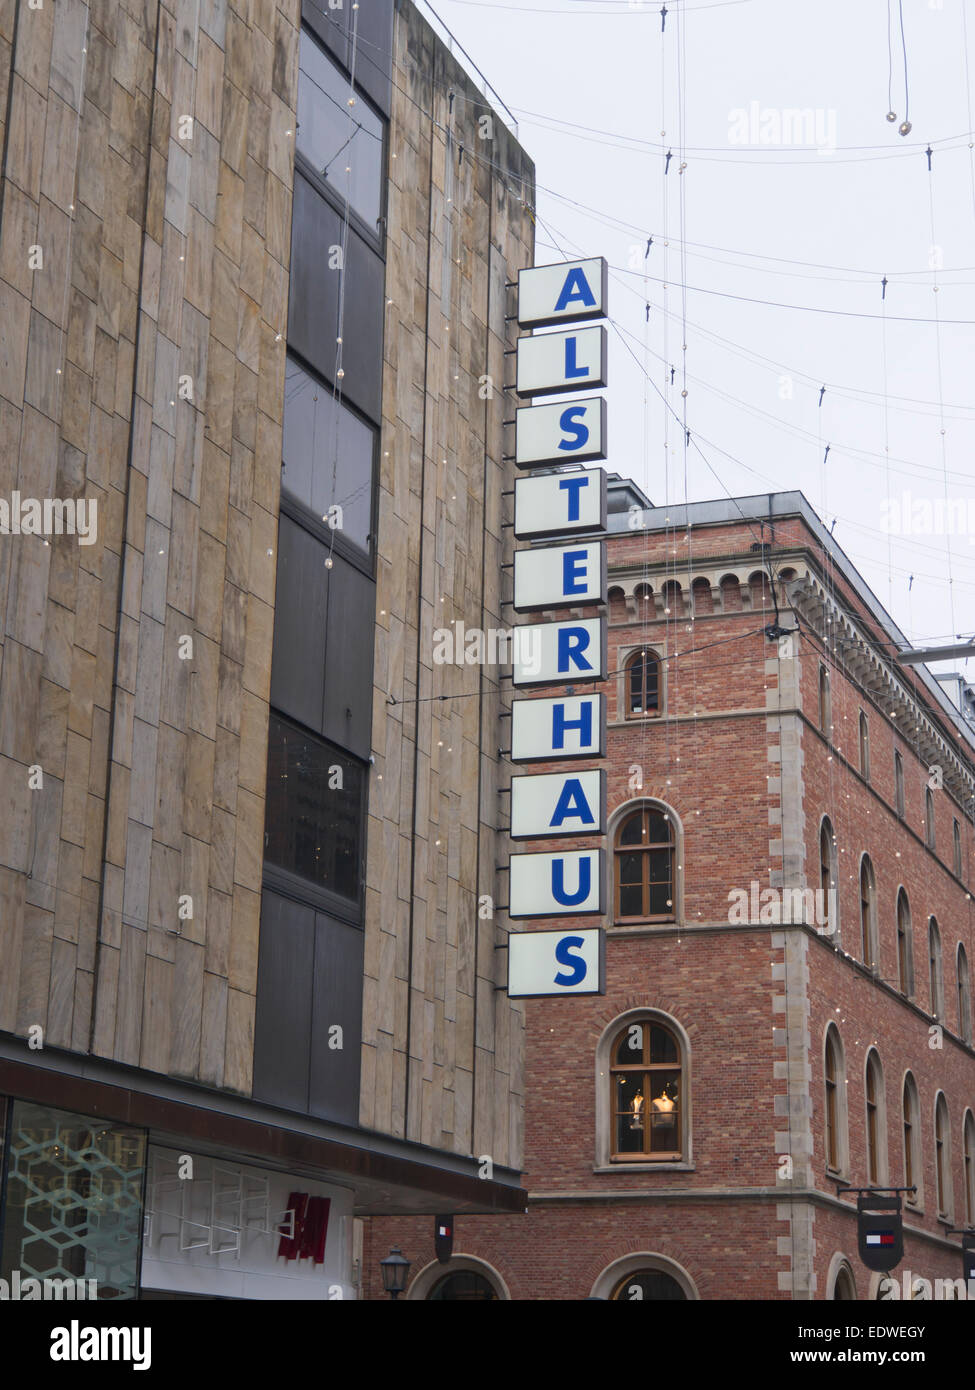 Alsterhaus, centre commercial dans le centre de Hambourg en Allemagne, vue partielle de façade Banque D'Images